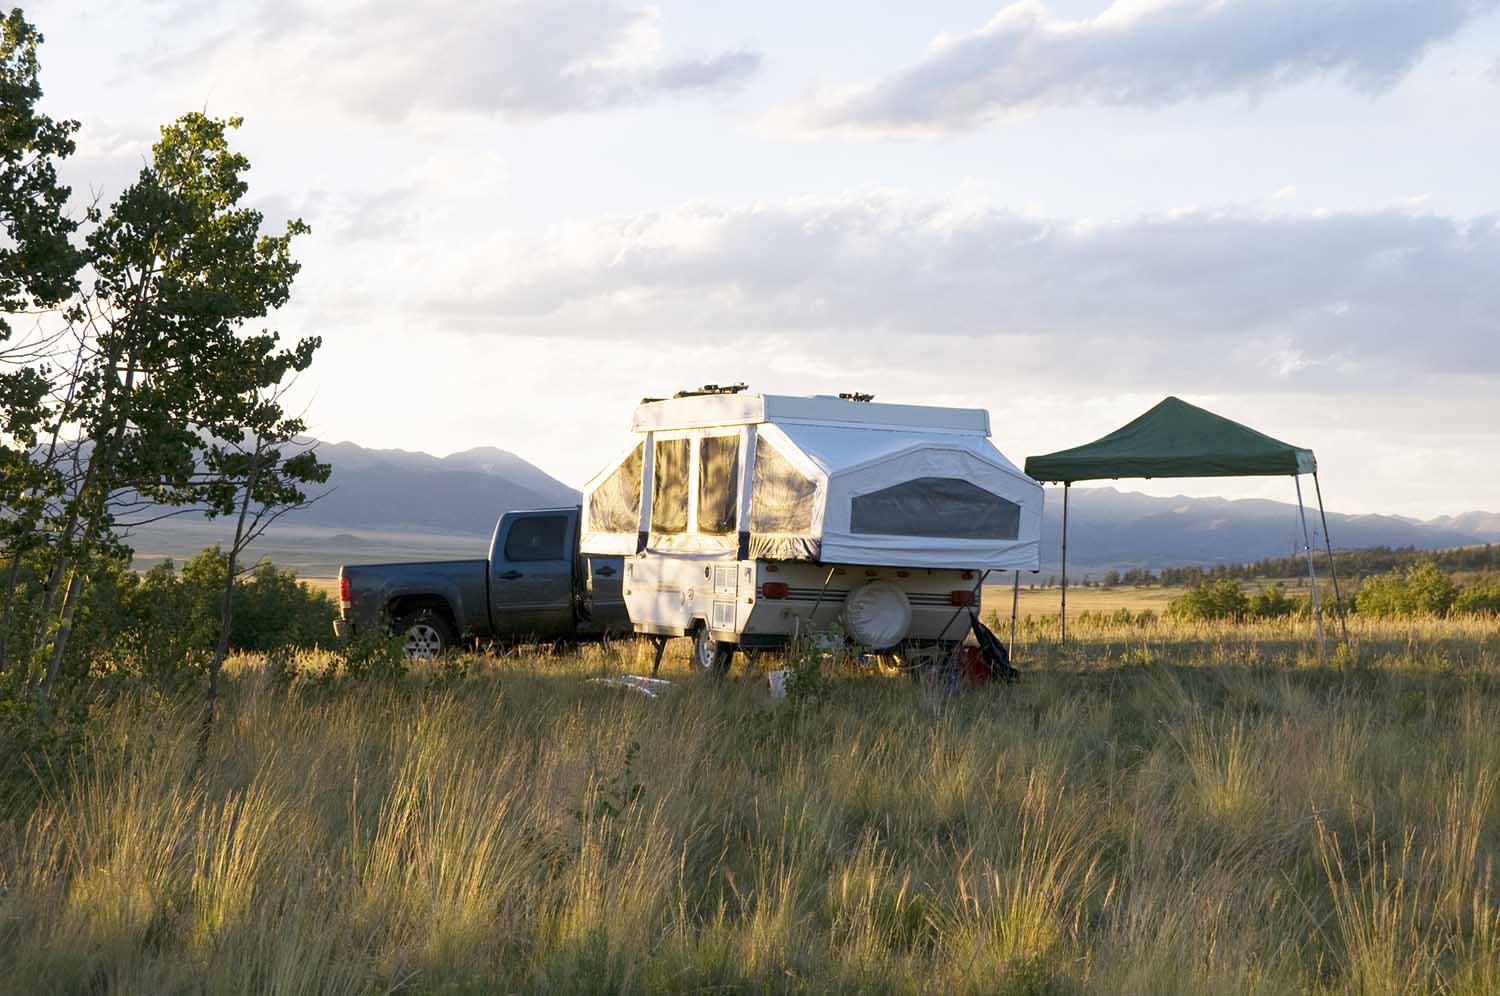 Popup camper in Colorado meadow.